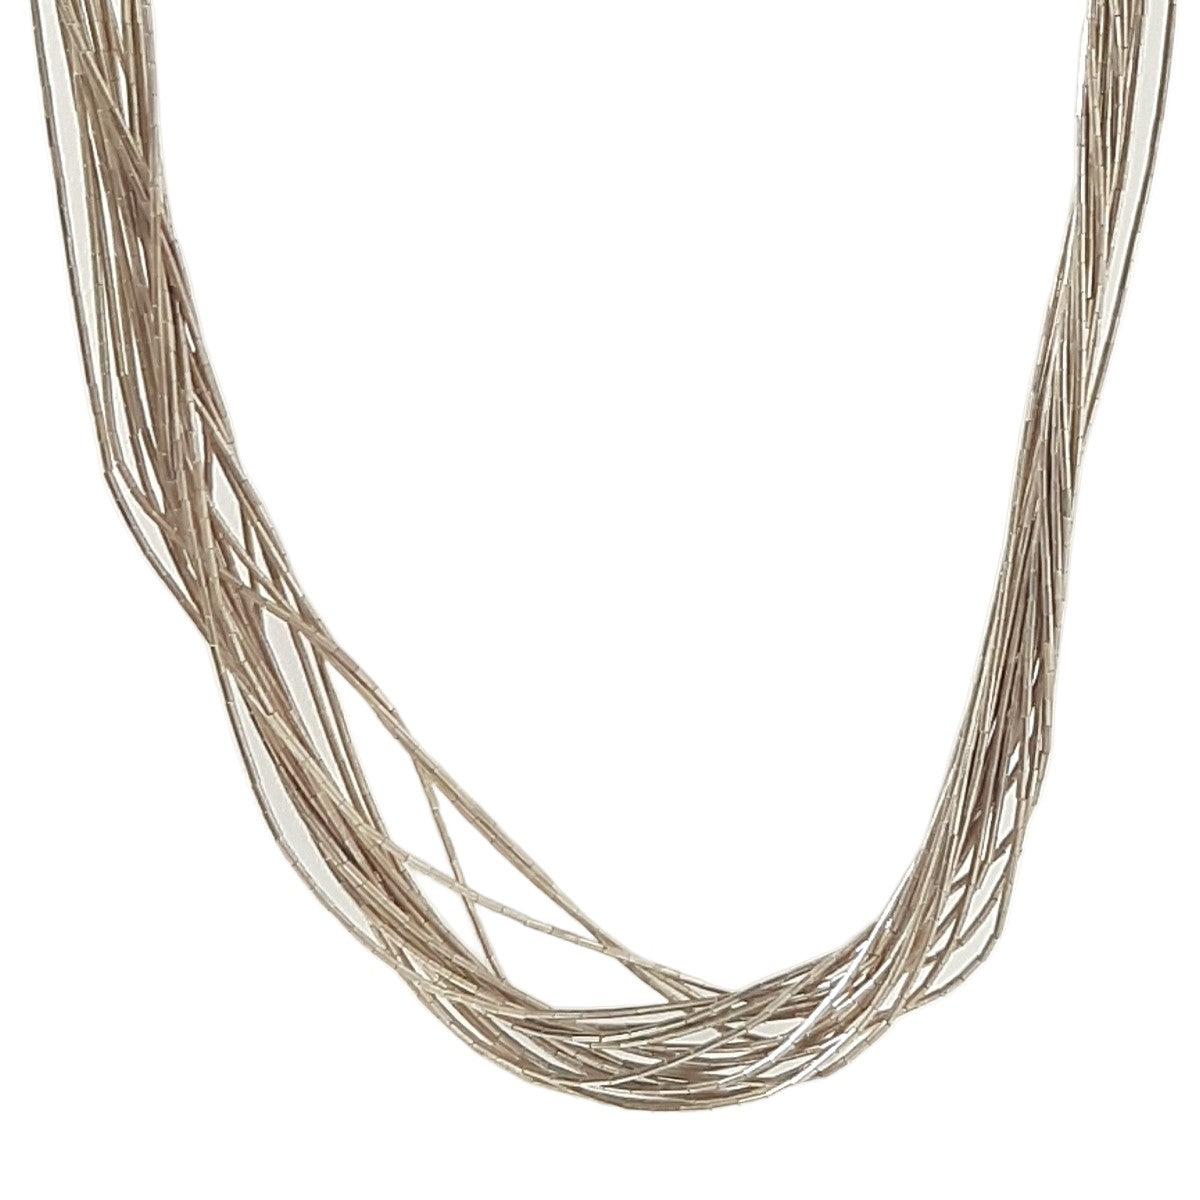 ヴィンテージ シルバー925 ナバホ パイプビーズ 20連 ネックレス 20g / Vintage Sterling Silver Navajo Pipe Beaded 20 Strand Necklace